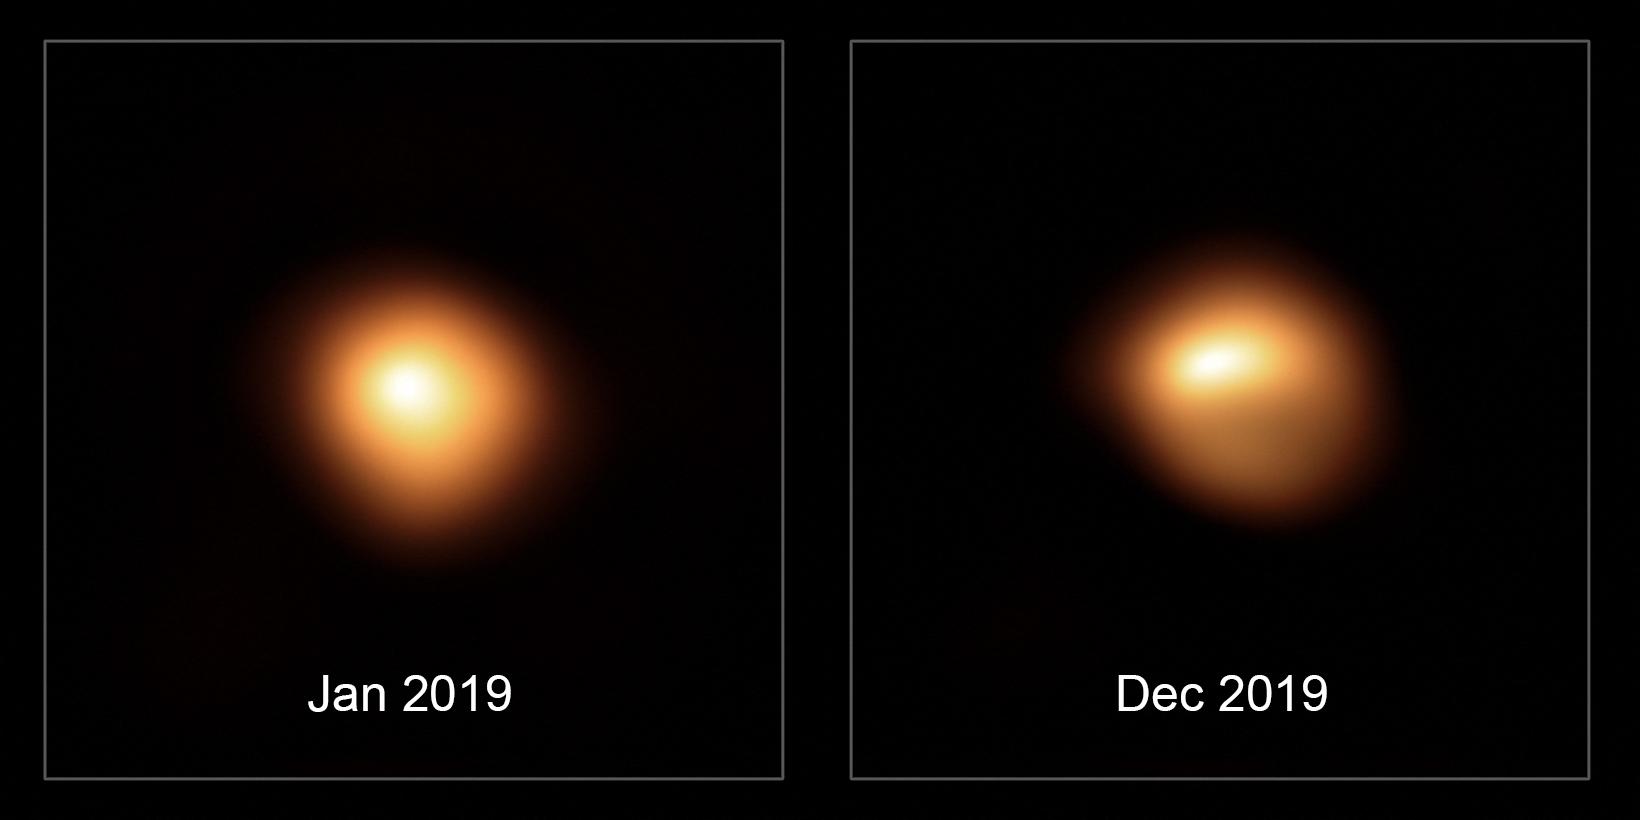 La "super géante rouge" Bételgeuse, photographiée avec une luminosité normale en janvier 2019 et diminuée en décembre 2019 (particulièrement dans sa région sud) [AFP - European Southern Observatory / AFP]